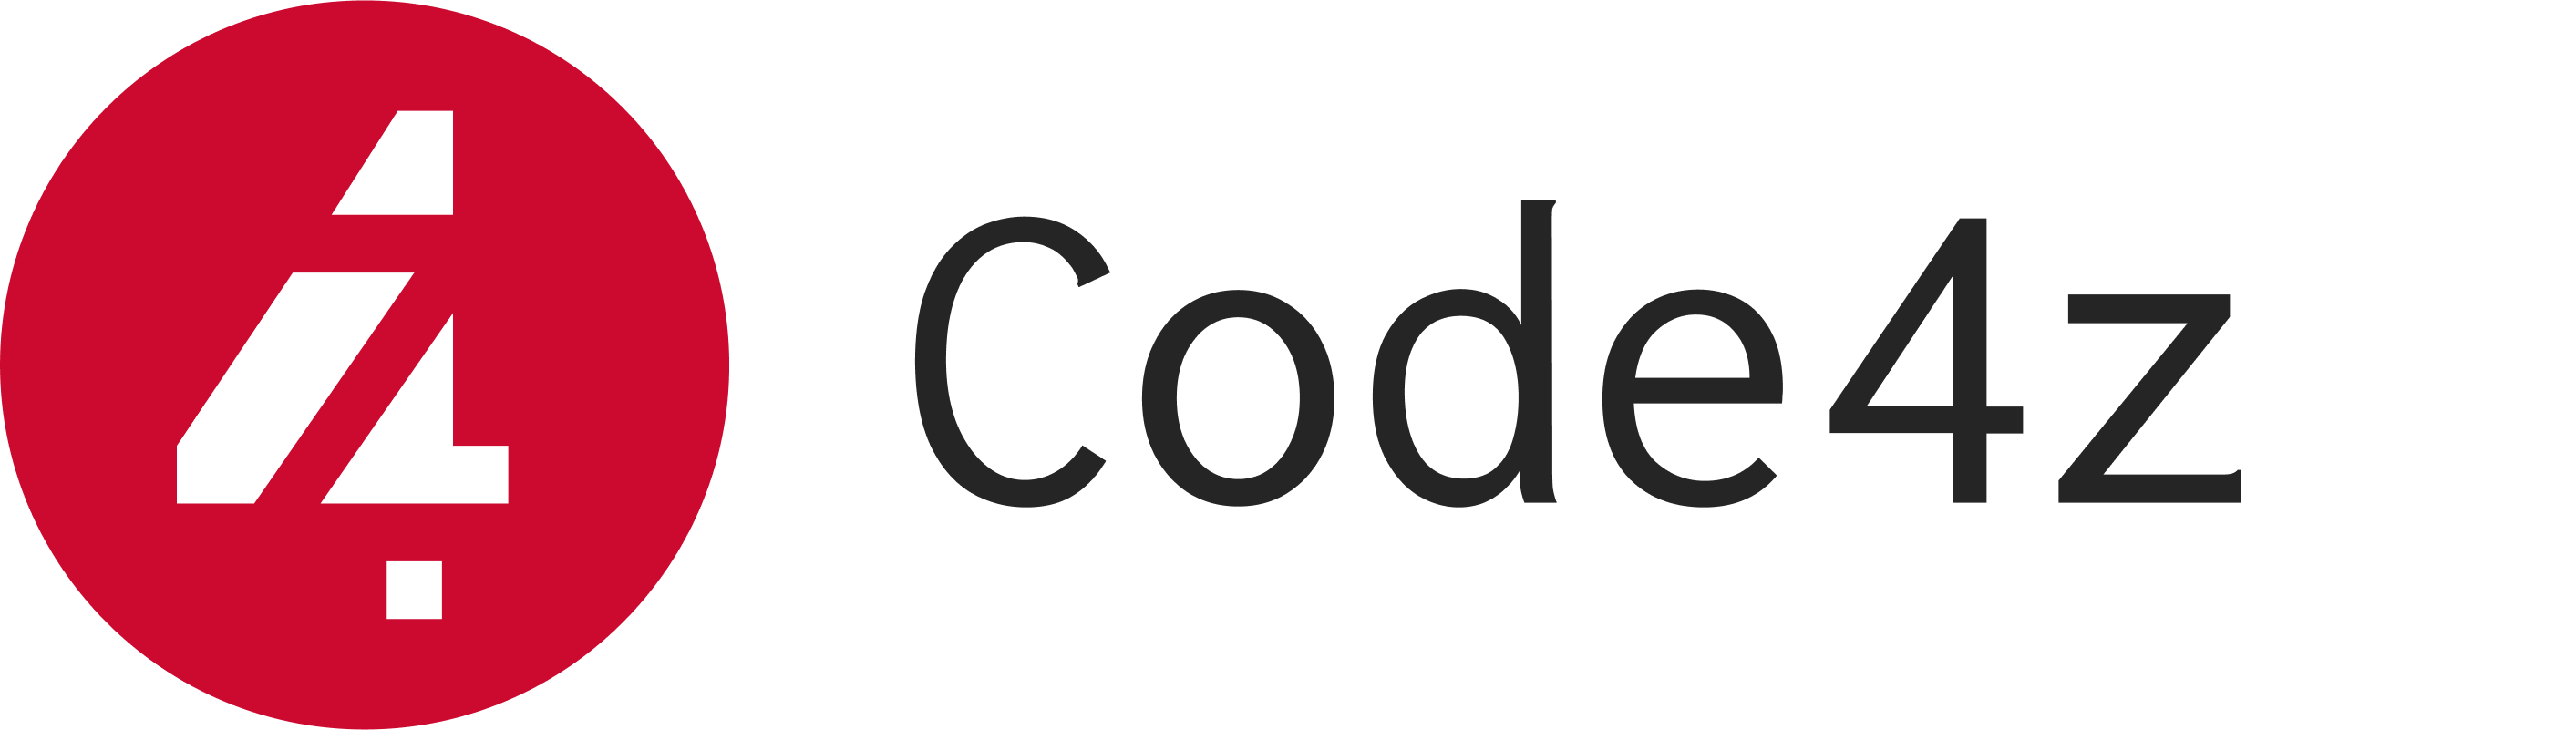 VS Code & Code4z – Modern Mainframe – Medium